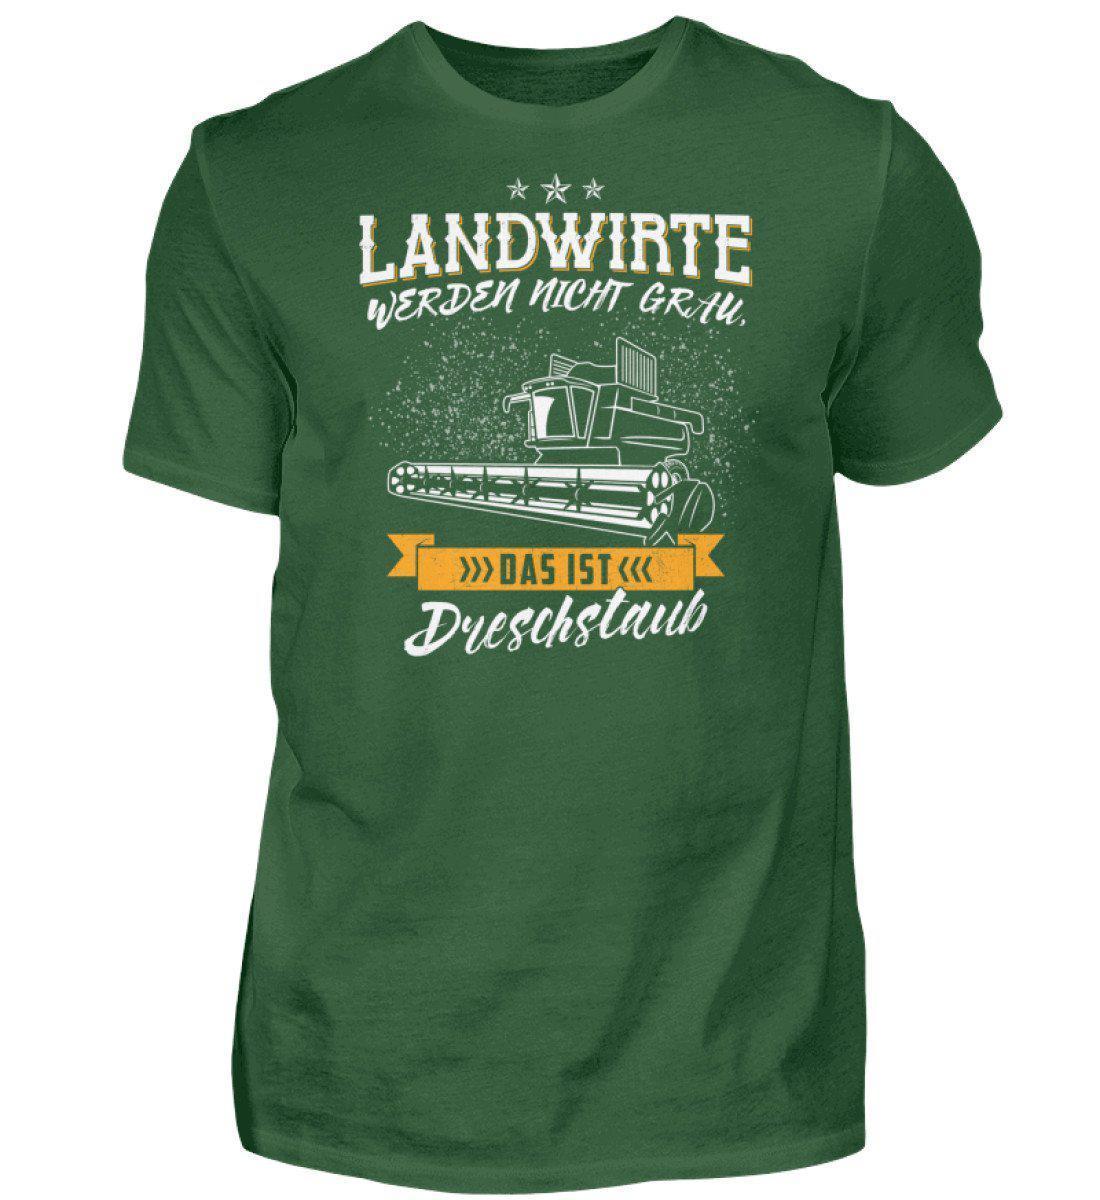 Landwirte grau Dreschstaub · Herren T-Shirt-Herren Basic T-Shirt-Bottle Green-S-Agrarstarz